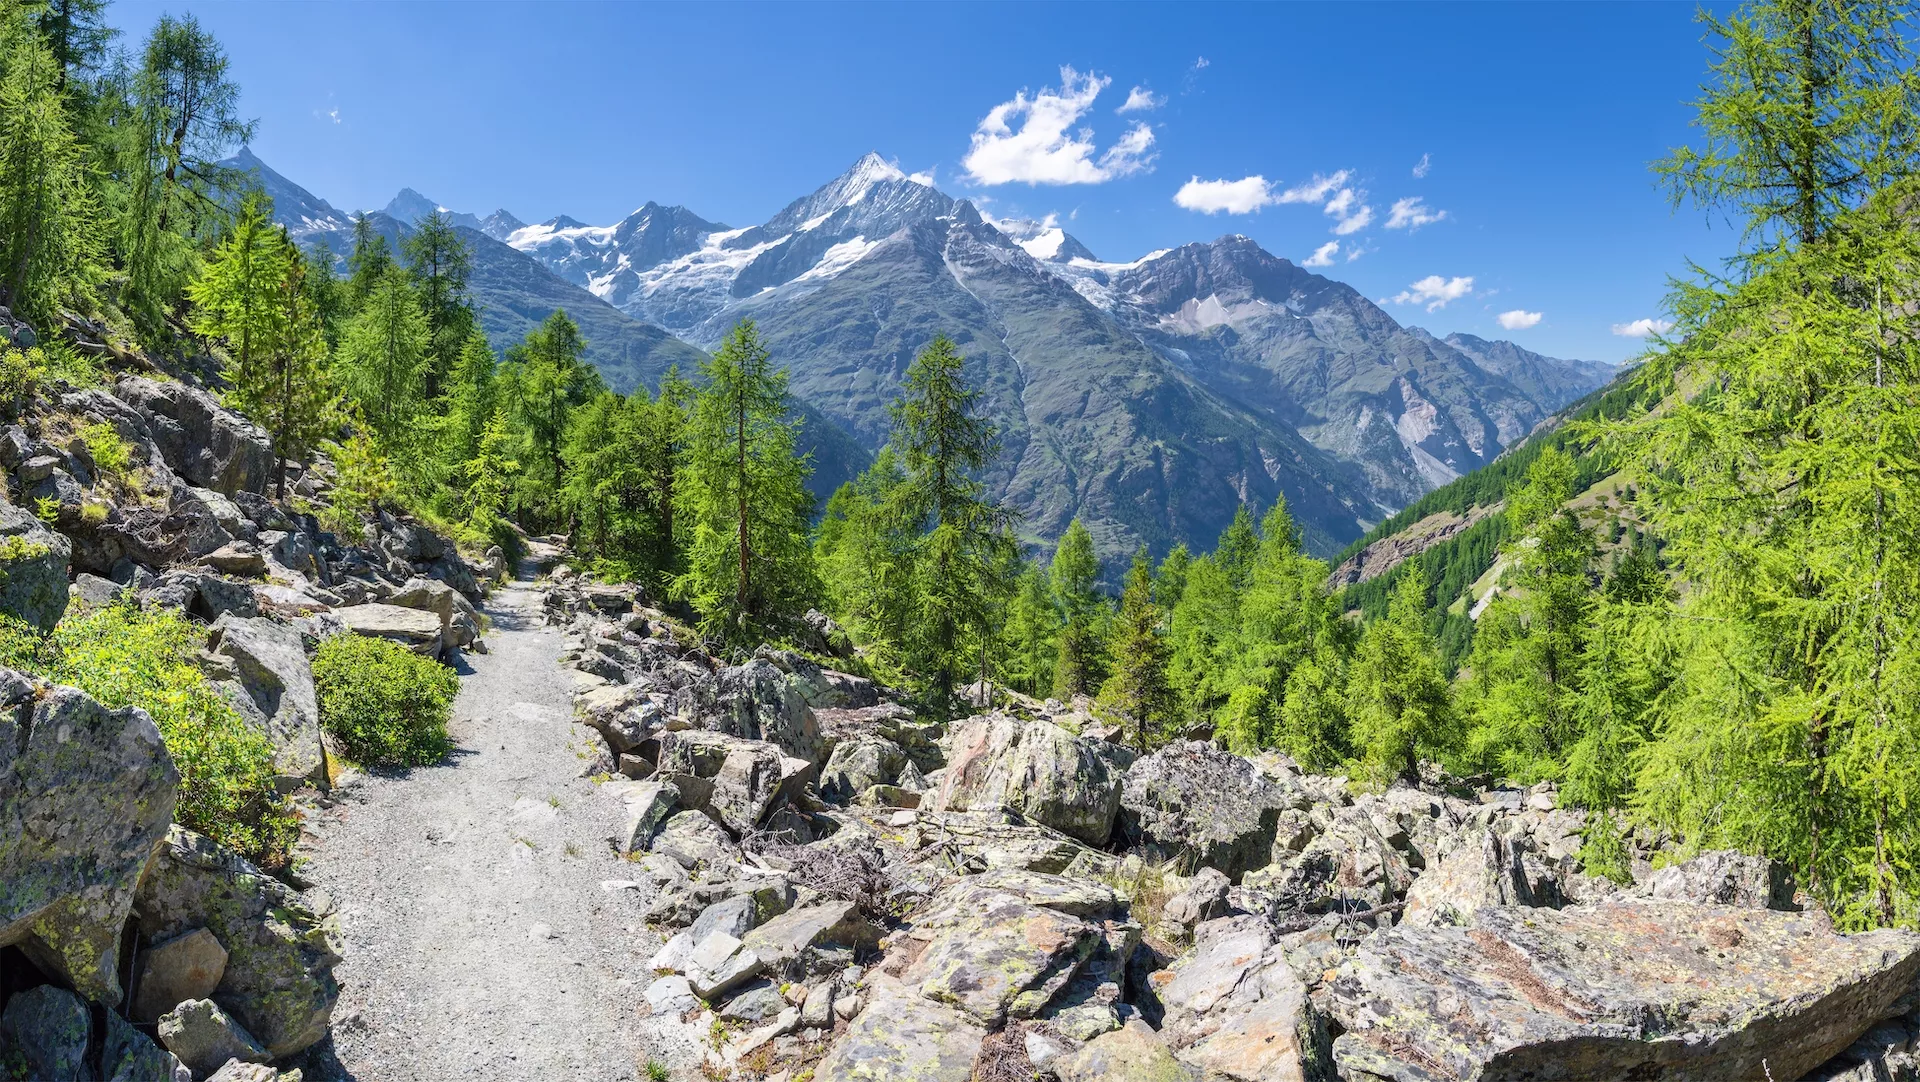 Los picos de los Alpes Walliser Bishorn, Weisshorn, Schalihorn y Rothorn sobre el valle del Mattertal